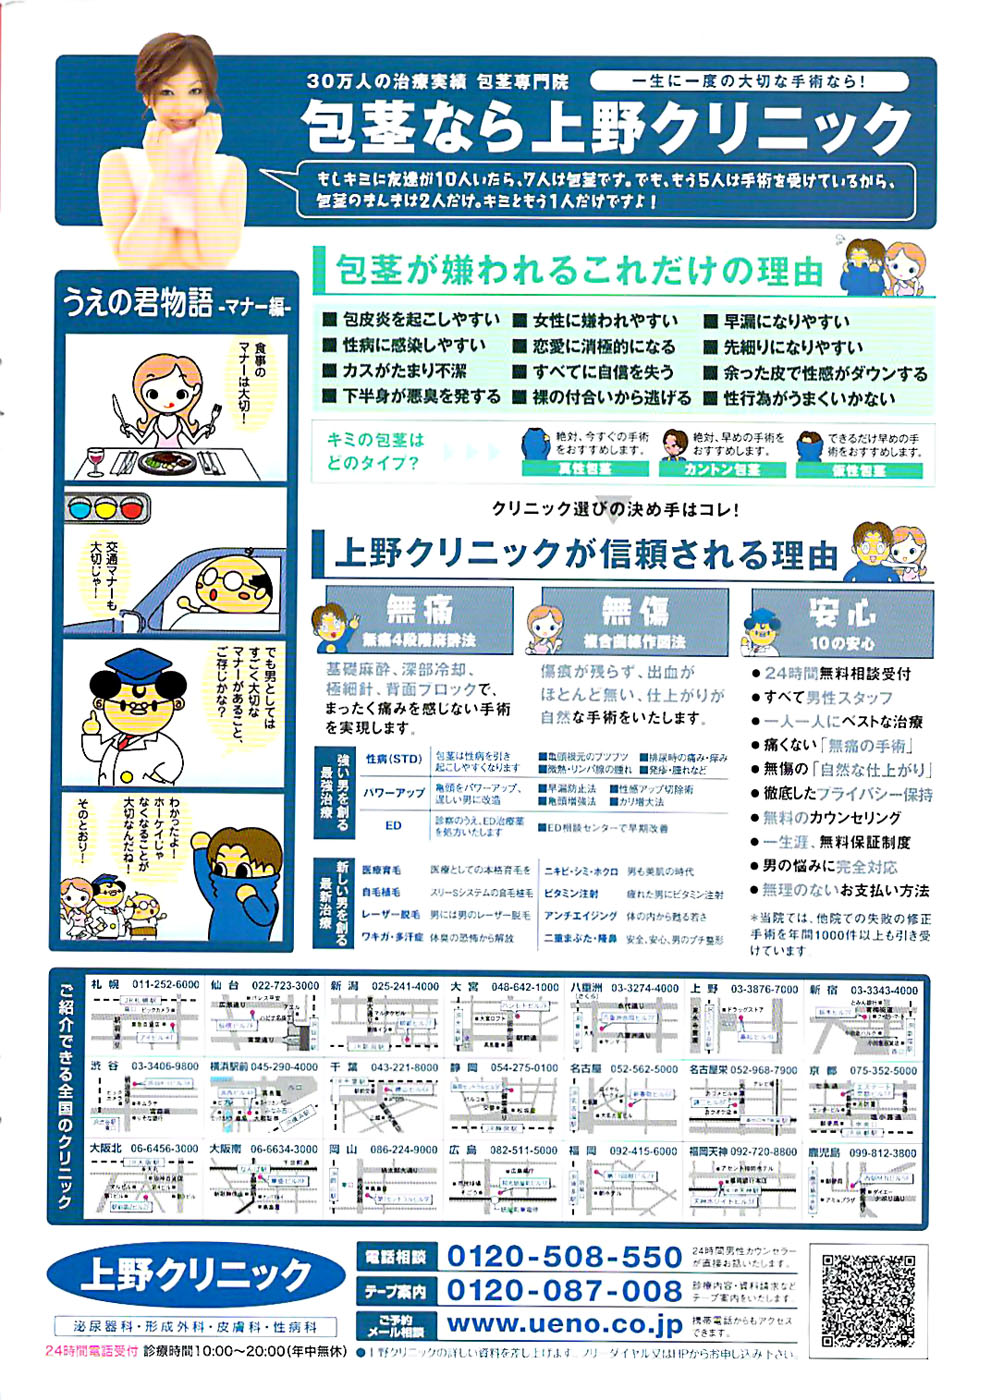 COMIC ちょいエス! 2008年4月号 Vol.9